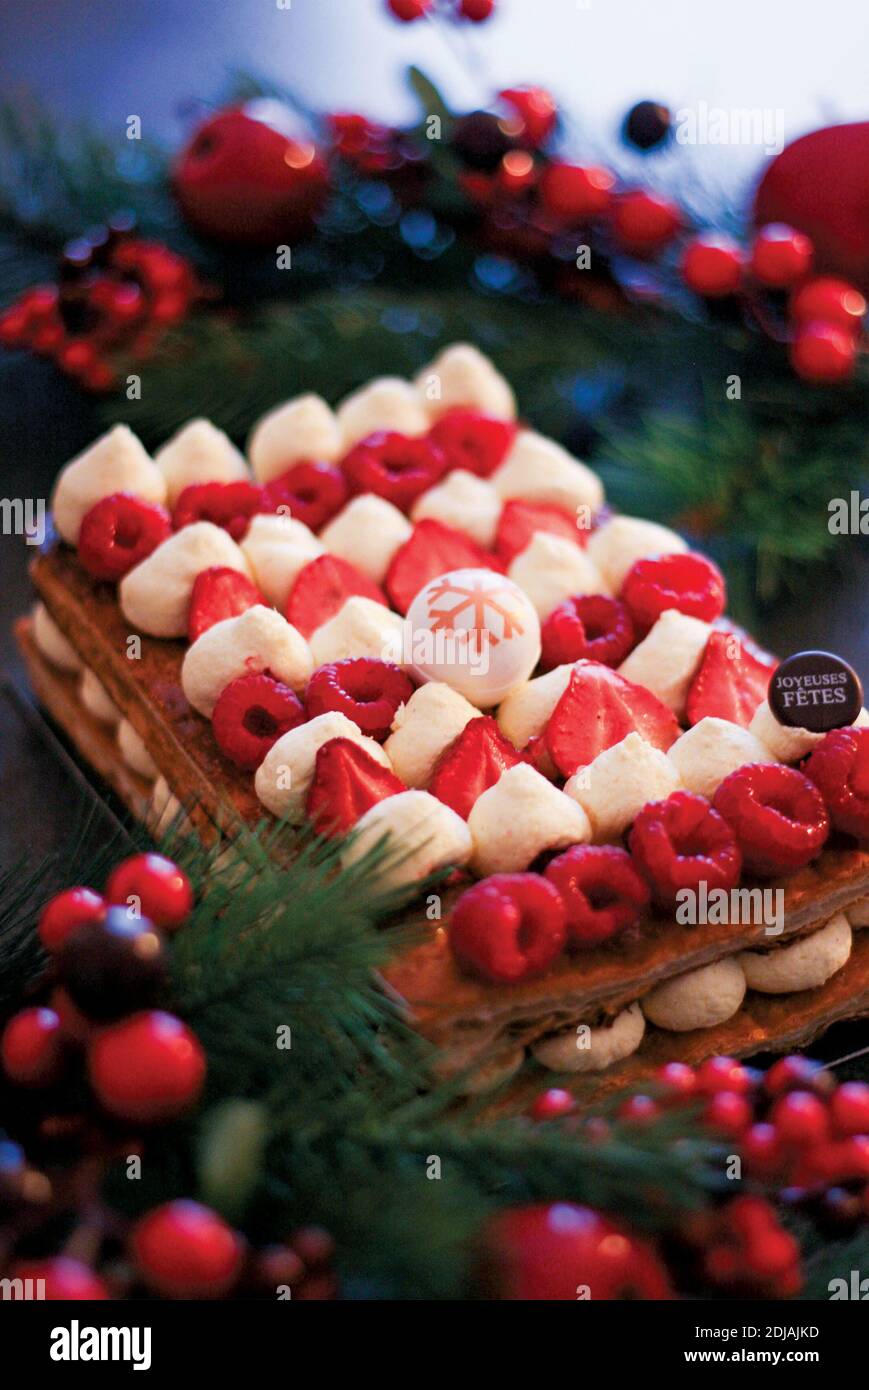 belle photographie d'un millefeuille aux fraises et framboises, dessert traditionnel français, pour illustrer une recette ou un article de magazine Stock Photo